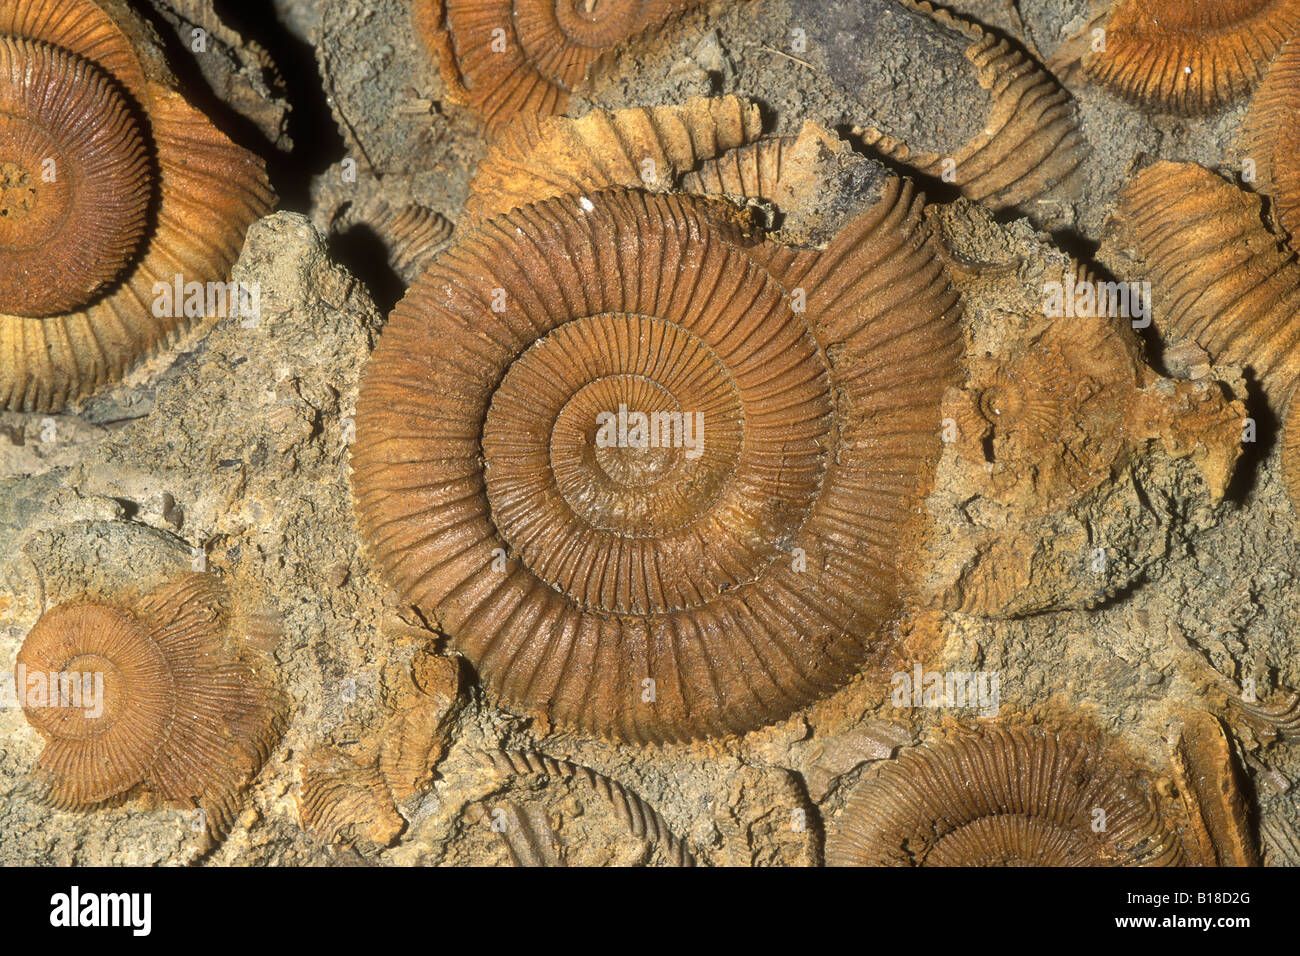 Ammonite fossile Jurassique 150 millions d'années Dactylioceras commune Whitby Grande-bretagne Banque D'Images